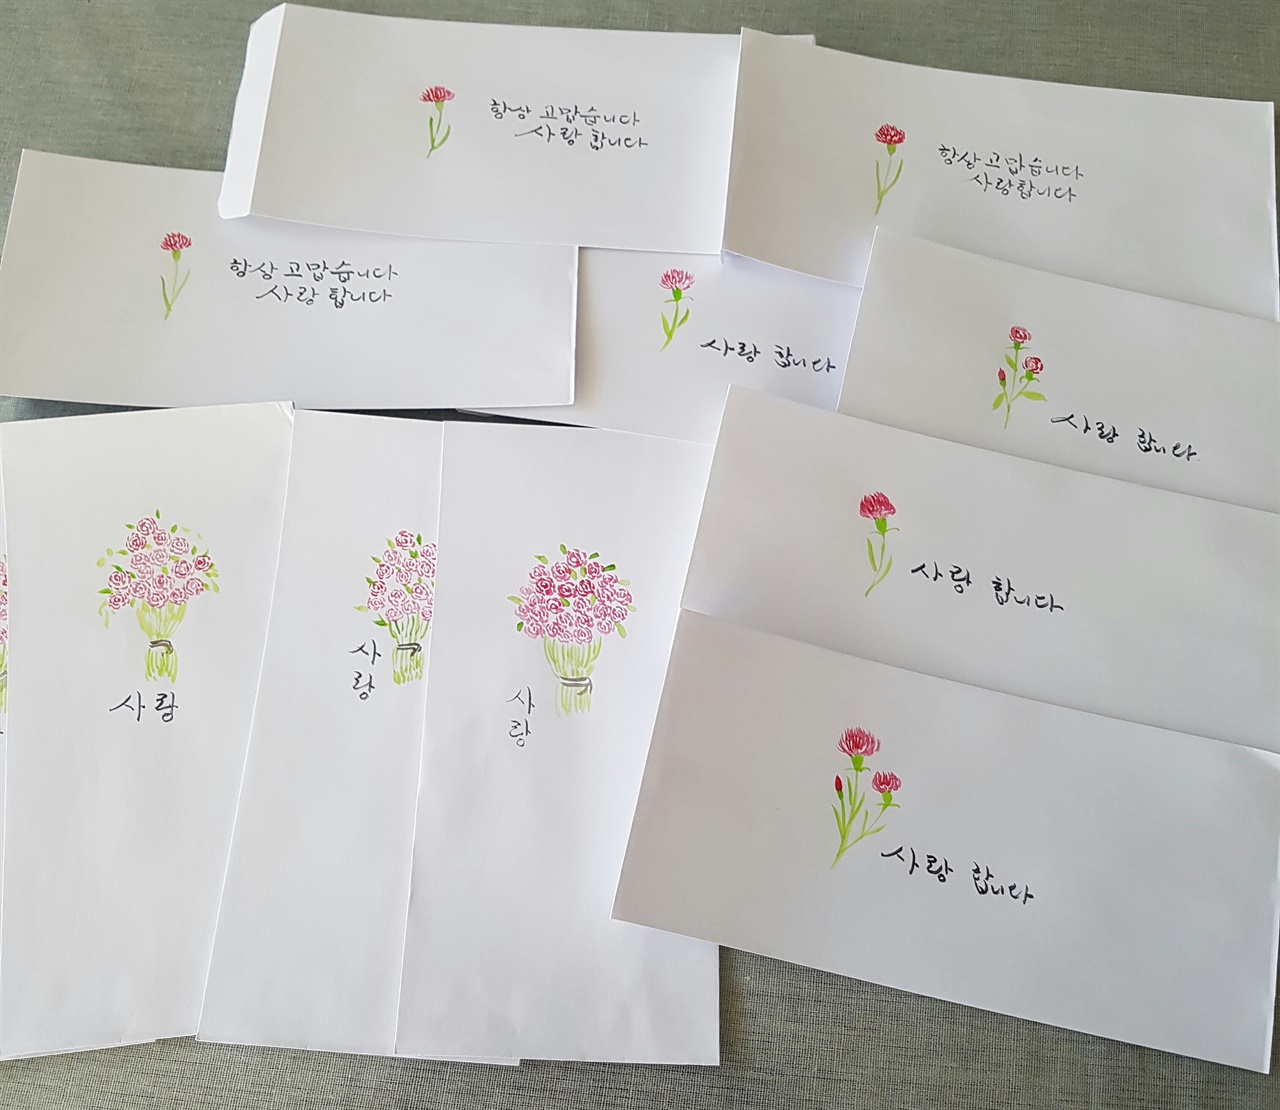 꽃그림 용돈 봉투 관광객에게 용돈 봉투에 그림을 그려 나누어 준다.엽서에도,